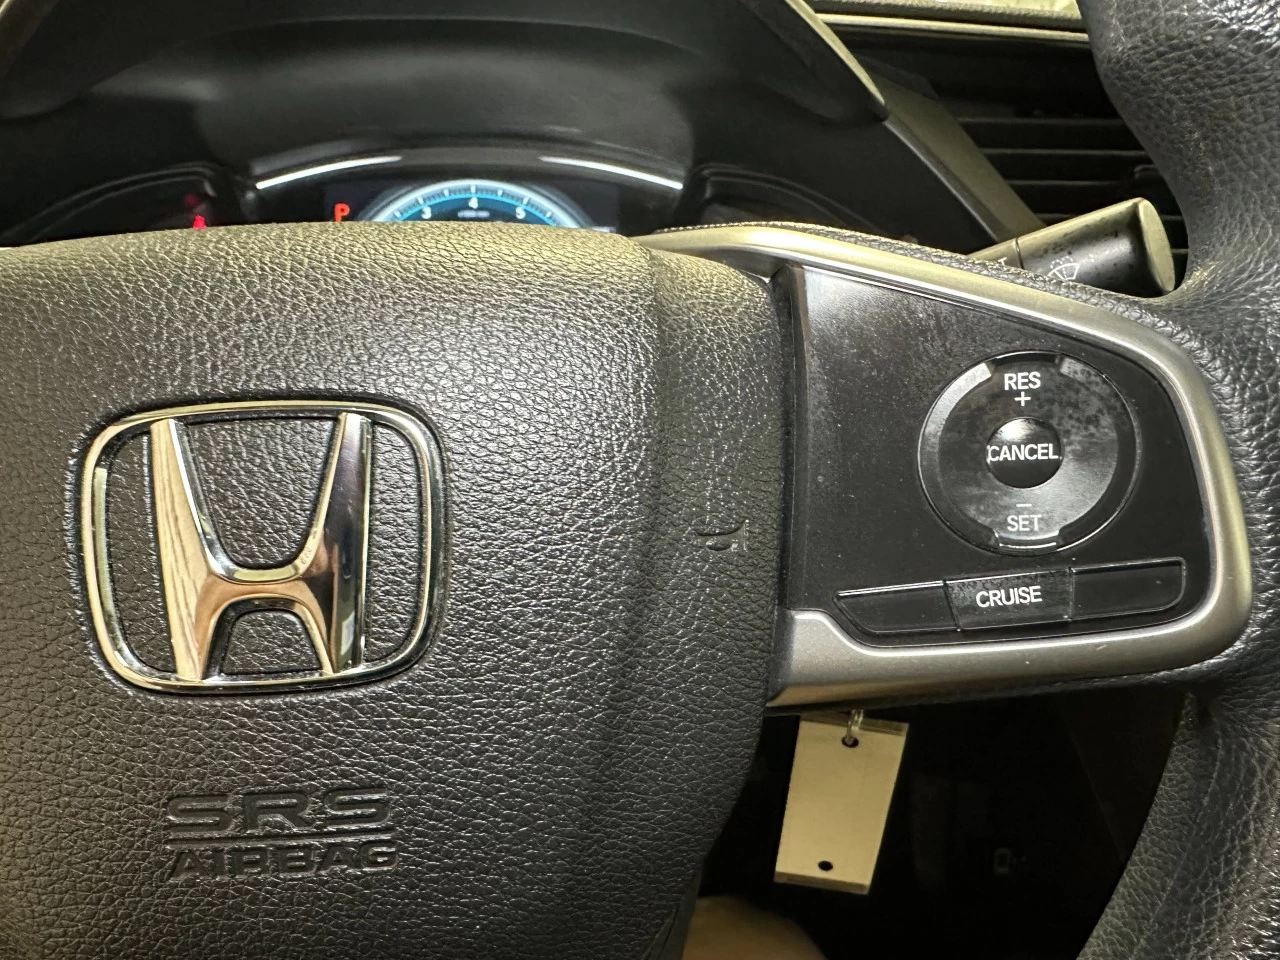 2016 Honda Civic
                                                    LX Main Image